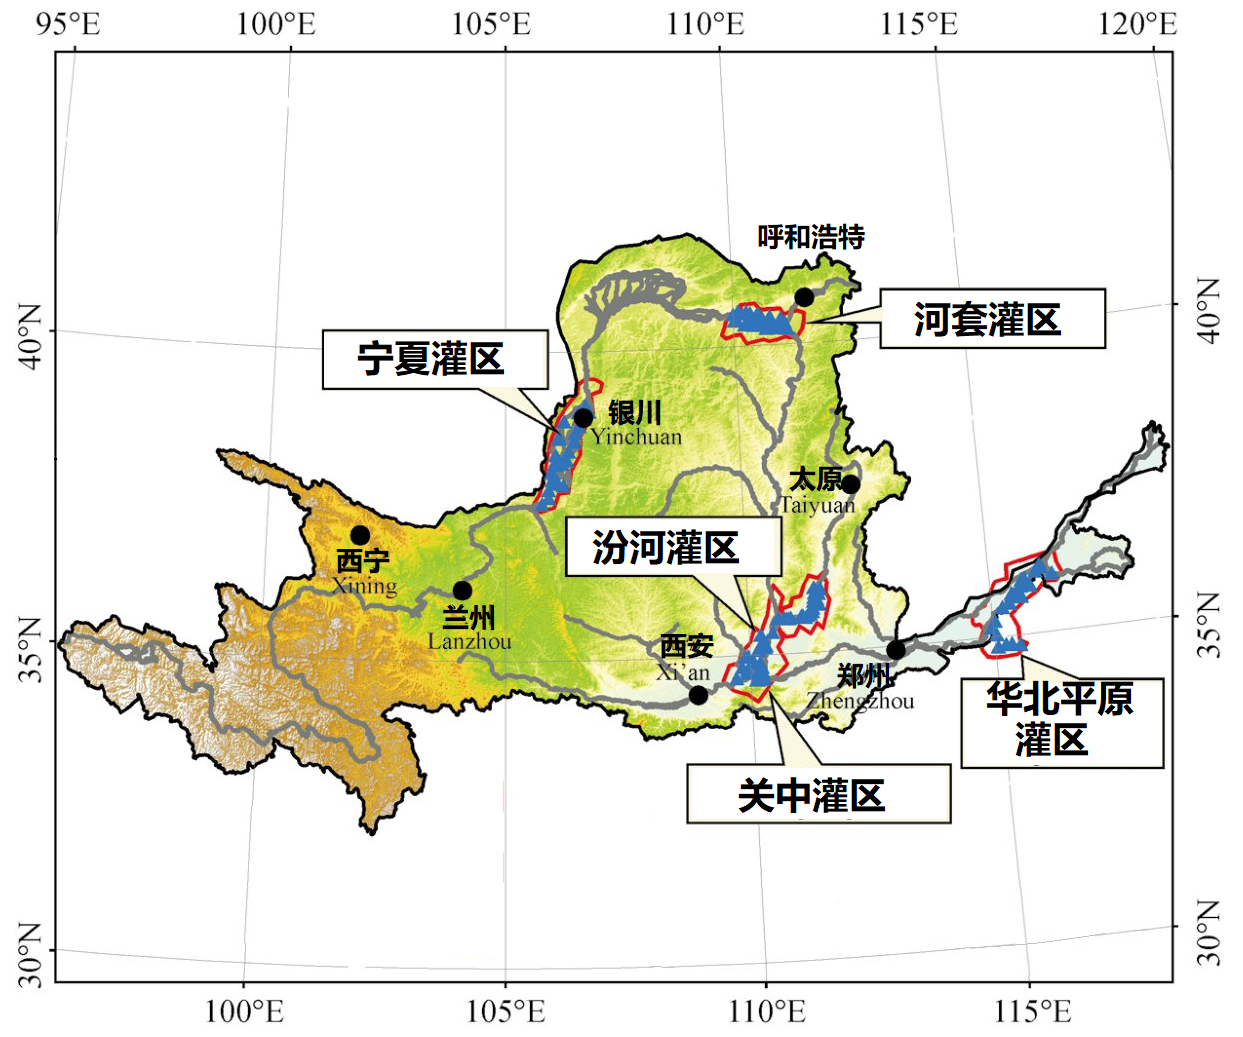 黄河流域是我国重要的农业主产区之一,黄河流域灌溉面积约570